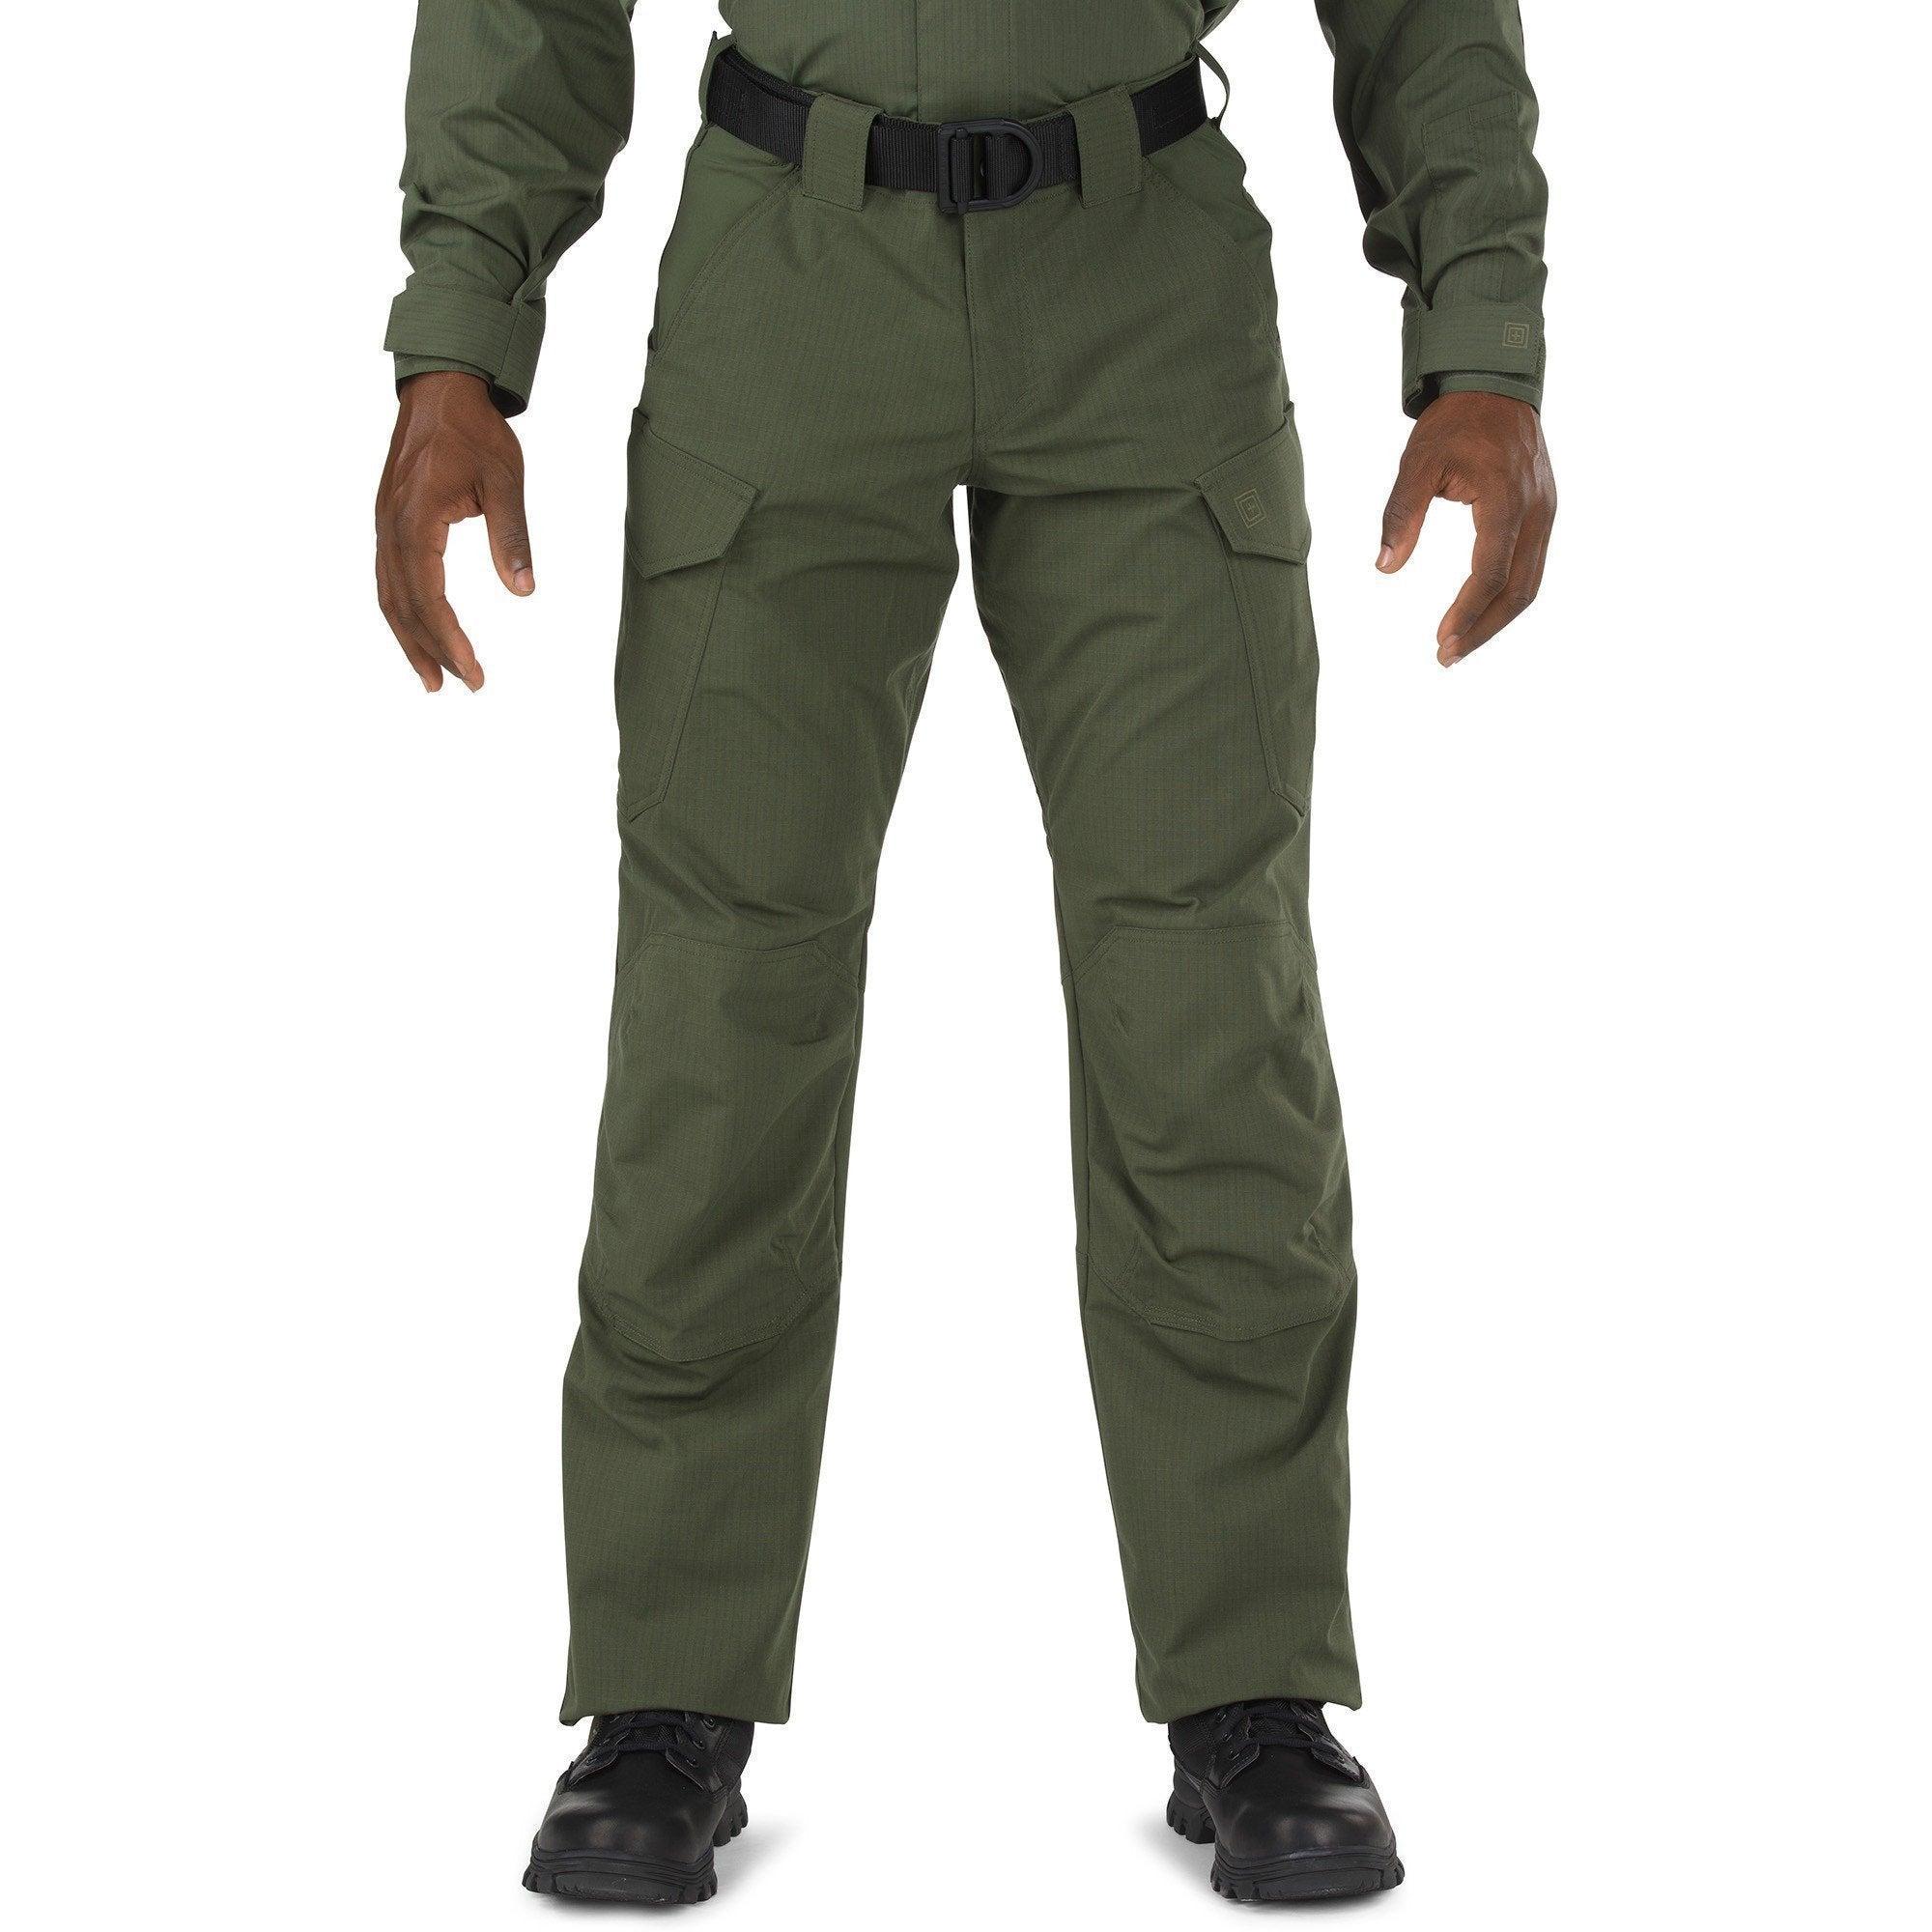 5.11 Tactical Stryke TDU Pants - TDU Green Pants 5.11 Tactical 28 28 Tactical Gear Supplier Tactical Distributors Australia